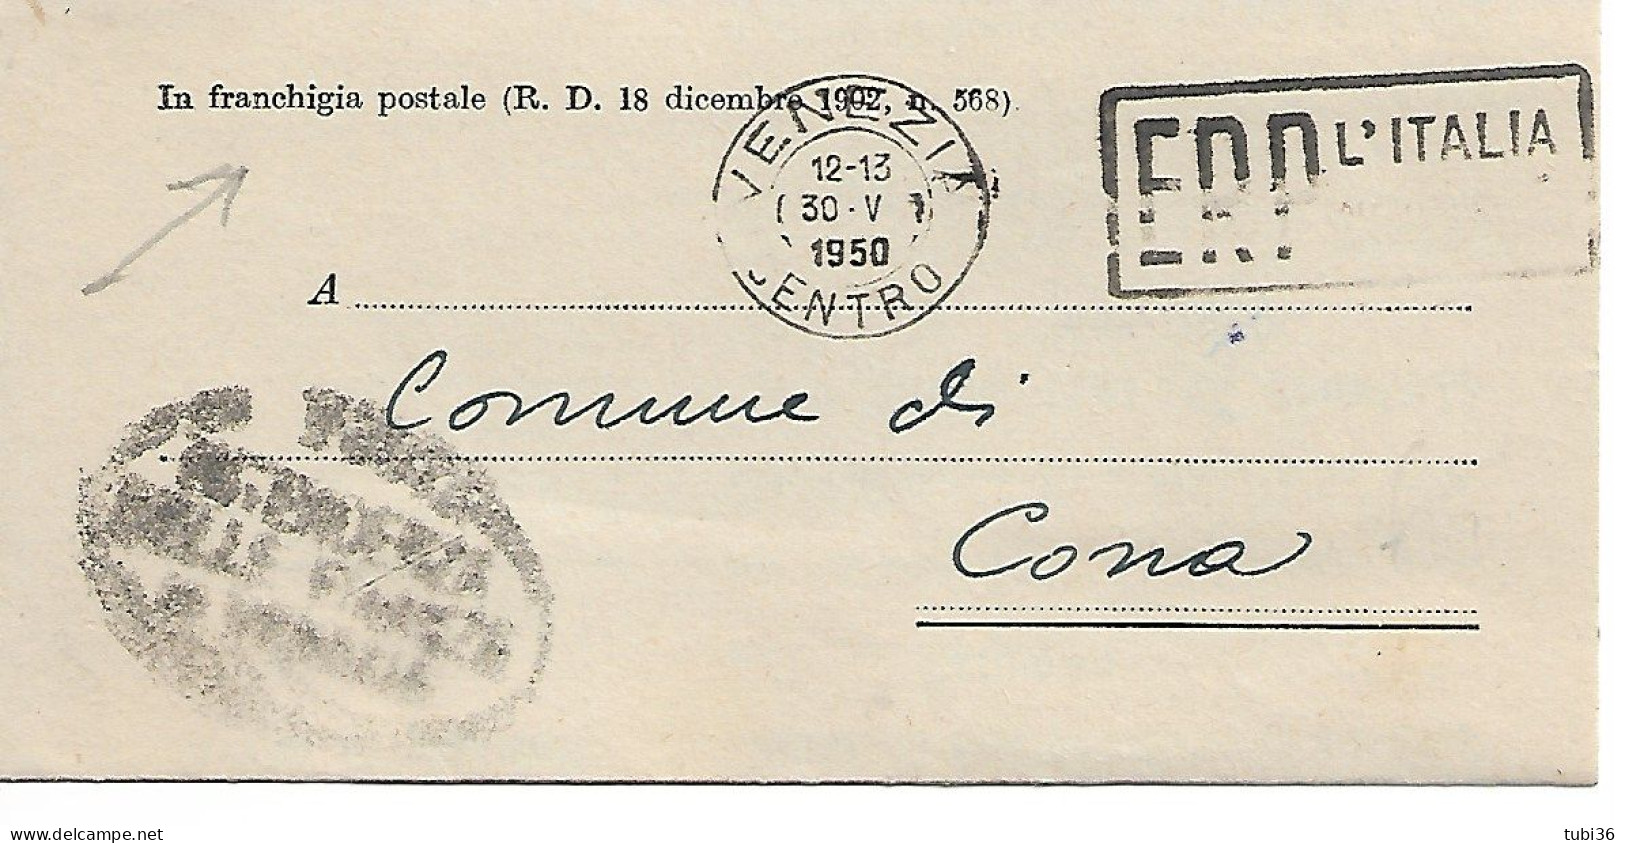 STORIA POSTALE - IN FRANCHIGIA POSTALE (R.D. 18 DICEMBRE 1902 N.568) VIAGGIATO 1950 - TIMBRO POSTE VENEZIA - TARGHETTA - Post